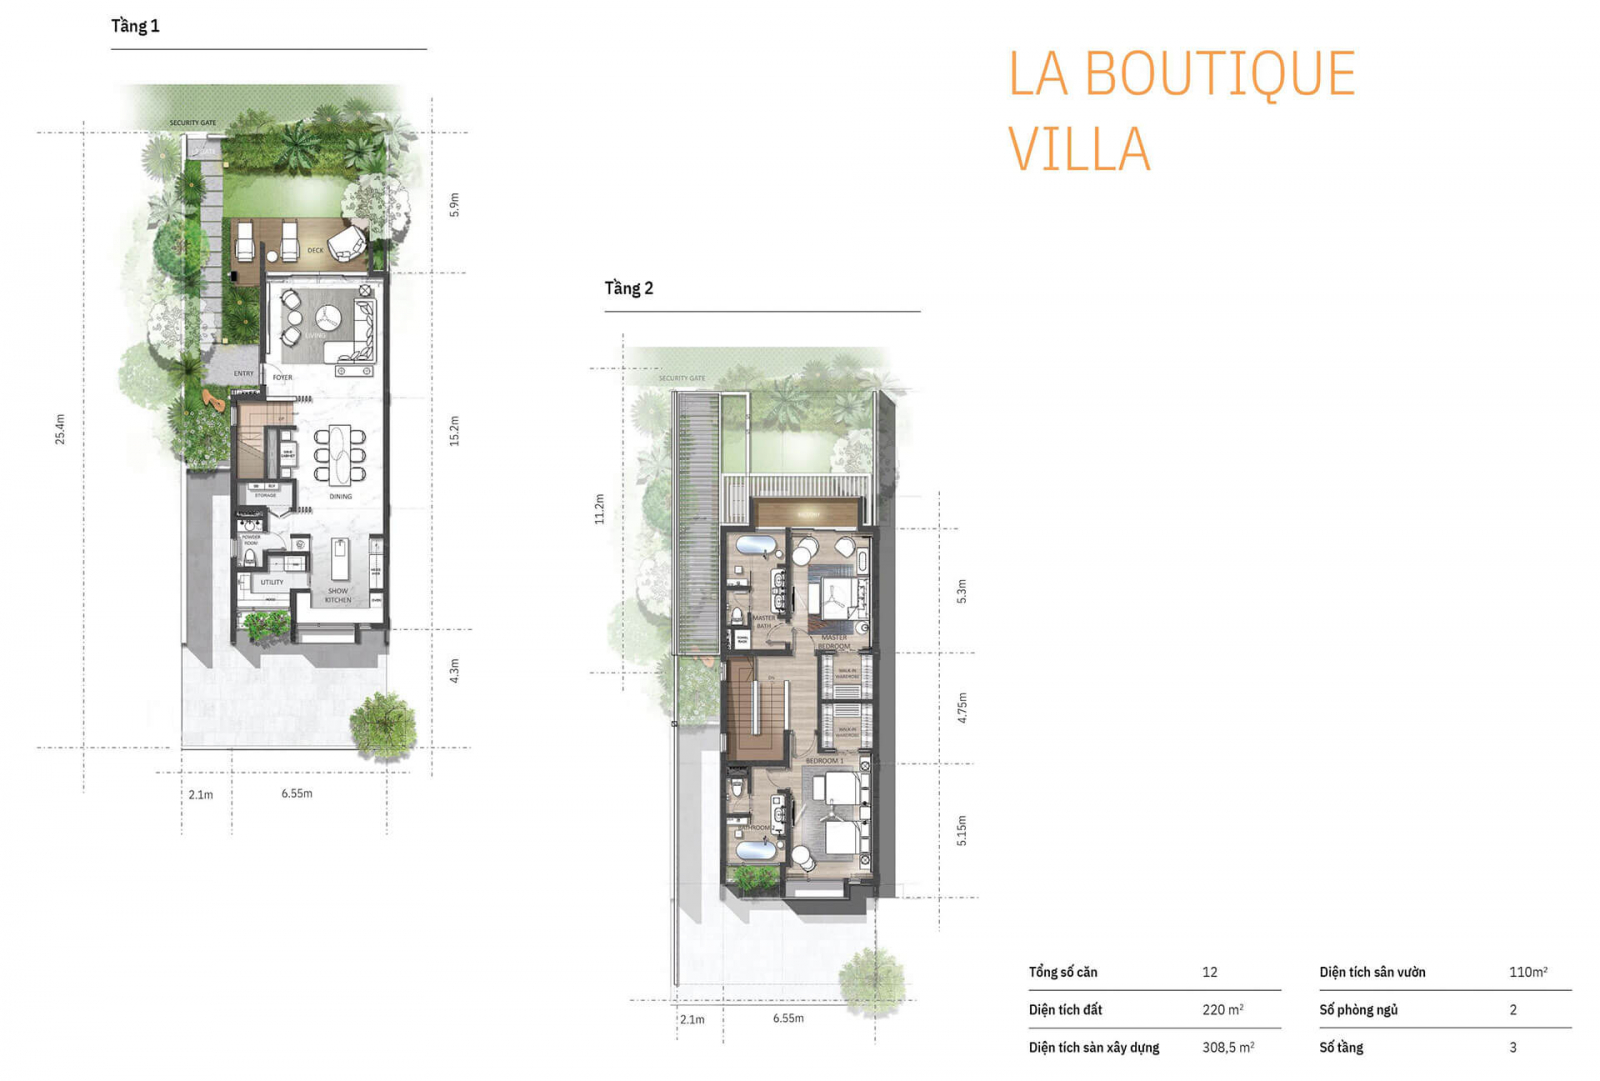 Le Méridien Residences da nang La Boutique Villa